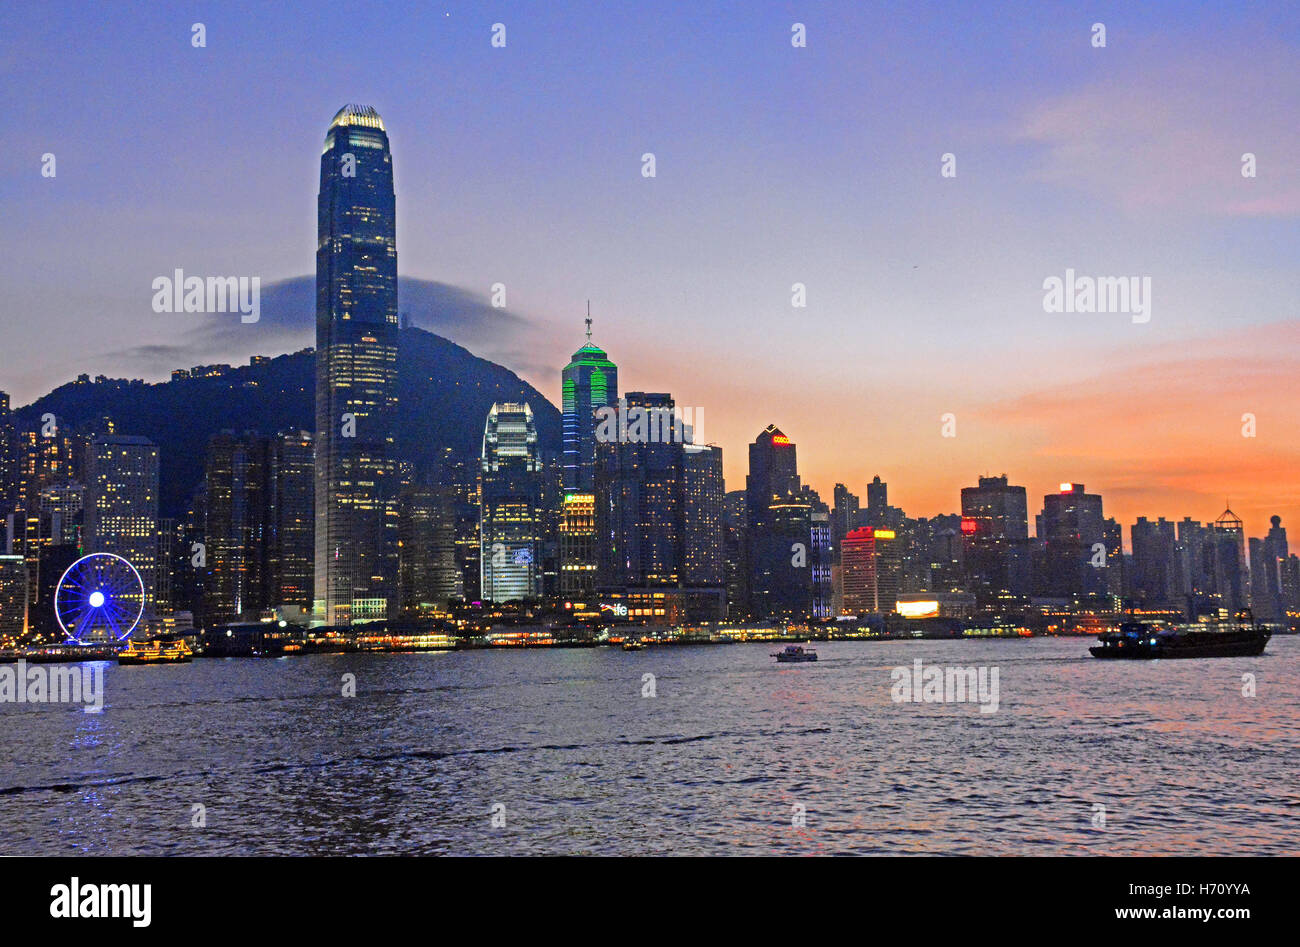 L'île de Hong Kong skyline Chine Banque D'Images